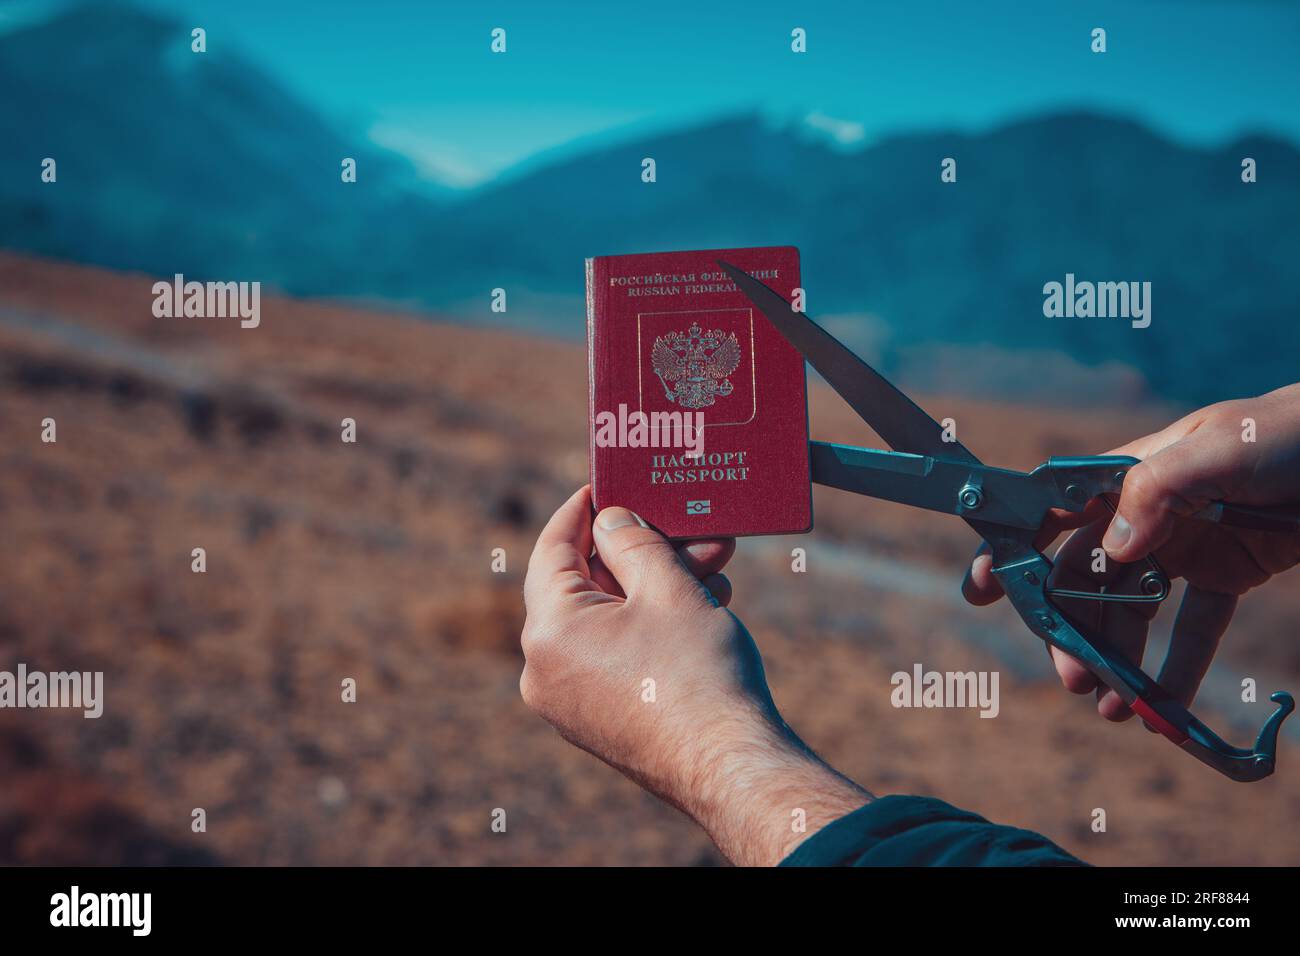 Uomo che taglia il passaporto russo sulle montagne, concetto di immigrazione Foto Stock